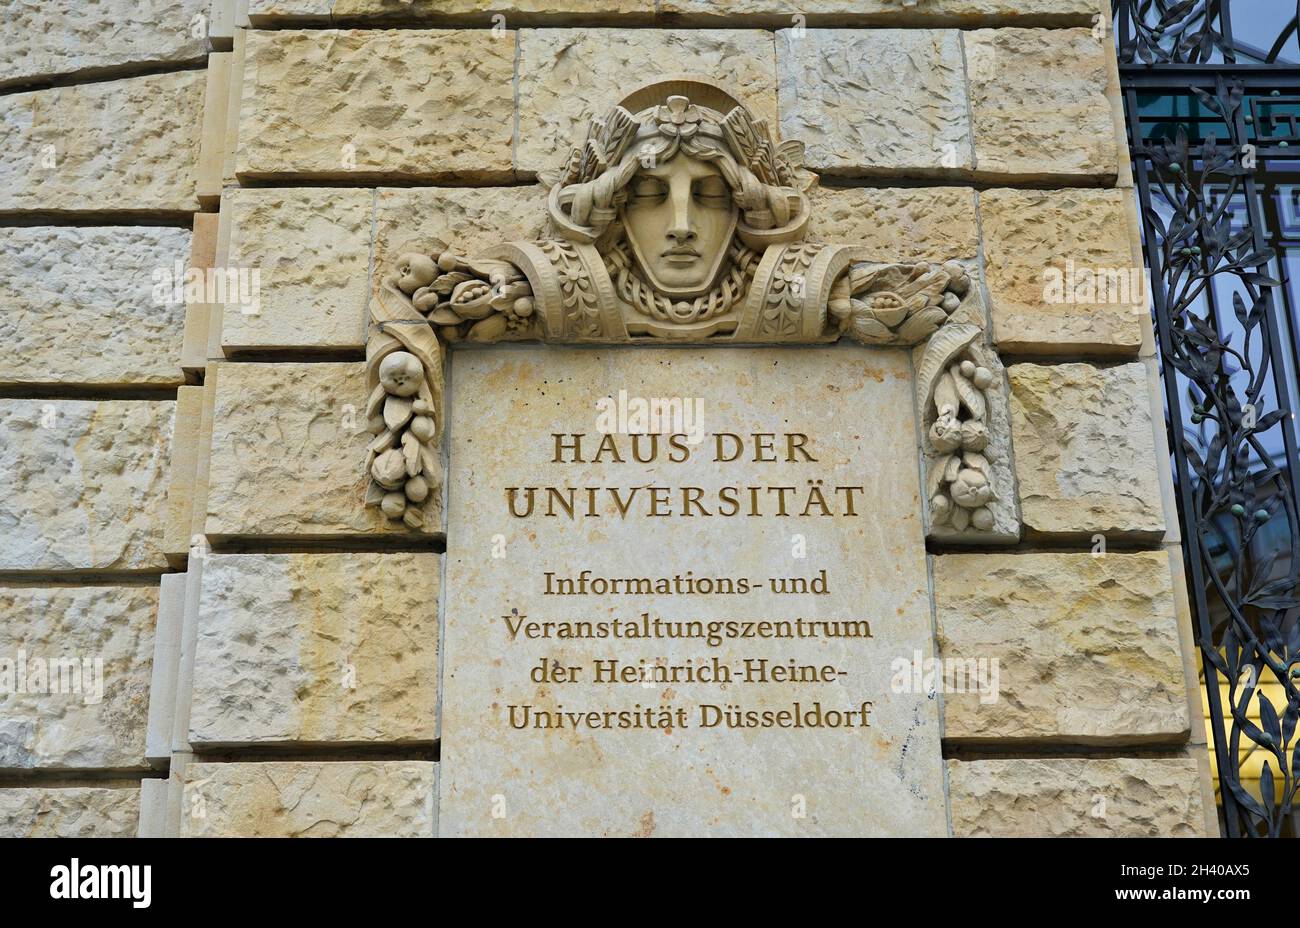 'Haus der Universität' in downtown Düsseldorf/Germany, an information and event center of Heinrich-Heine University. Stock Photo